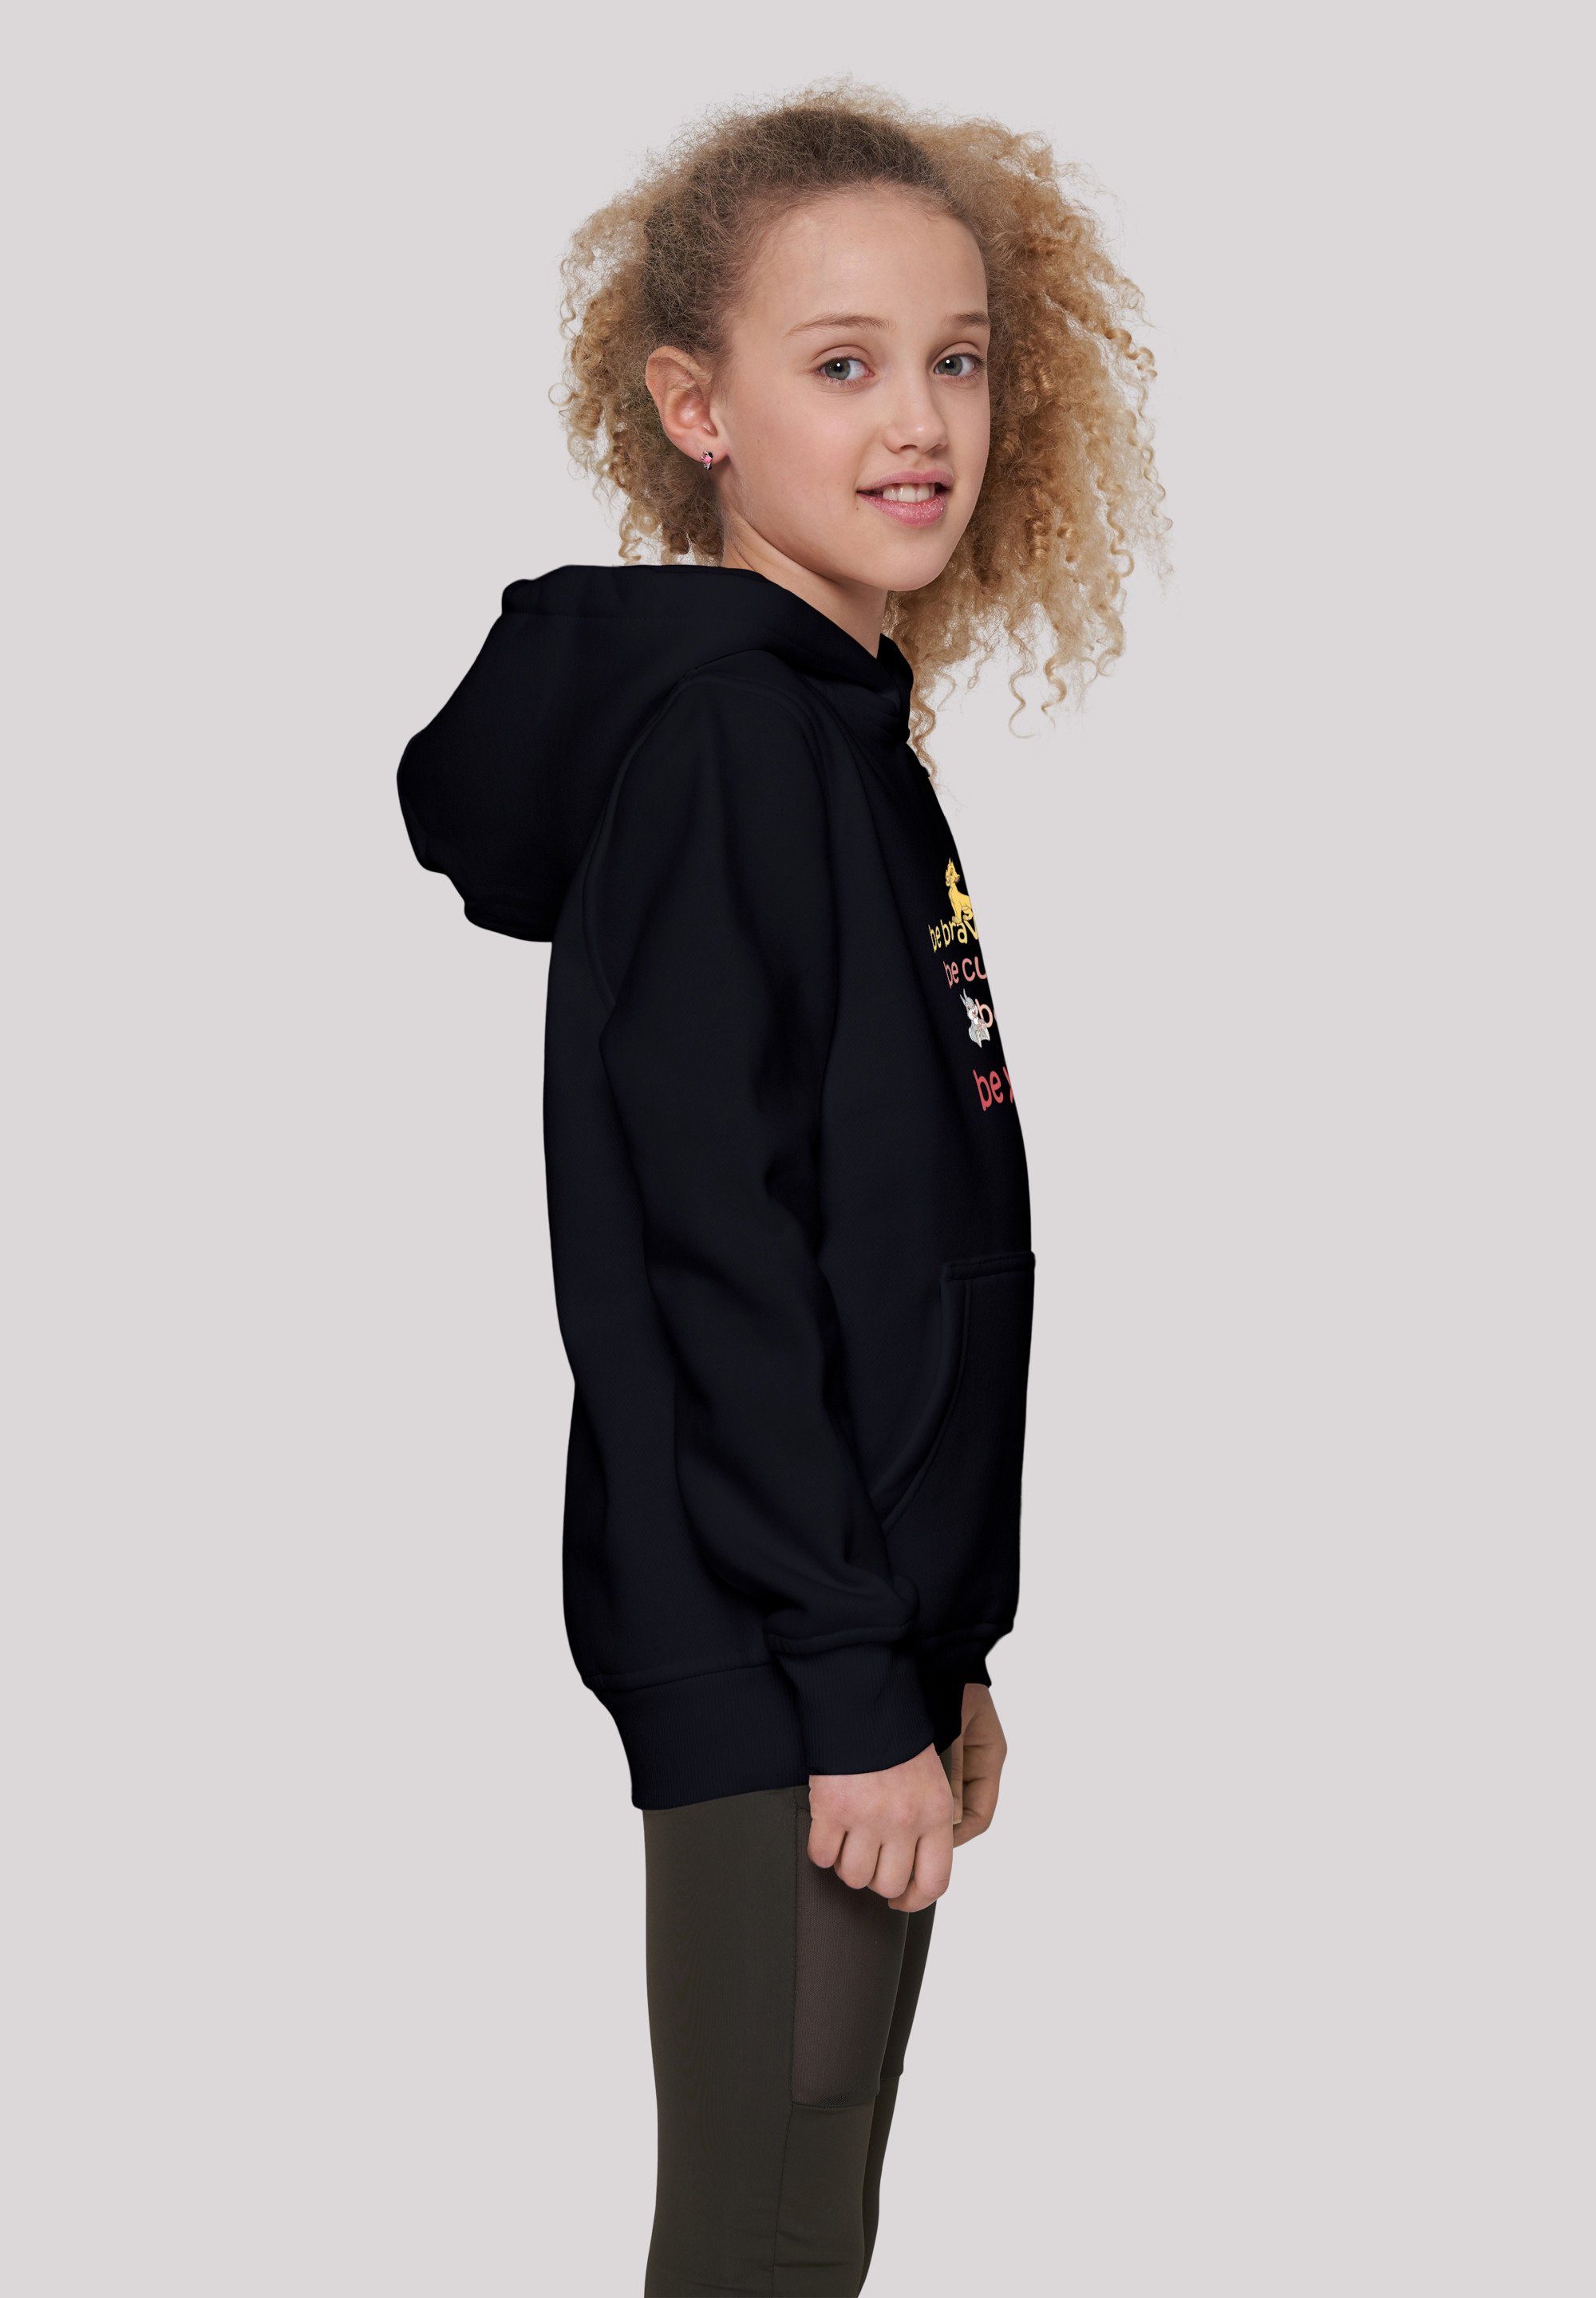 F4NT4STIC Sweatshirt Disney Be Unisex Kinder,Premium Be Curious Brave Merch,Jungen,Mädchen,Bedruckt schwarz